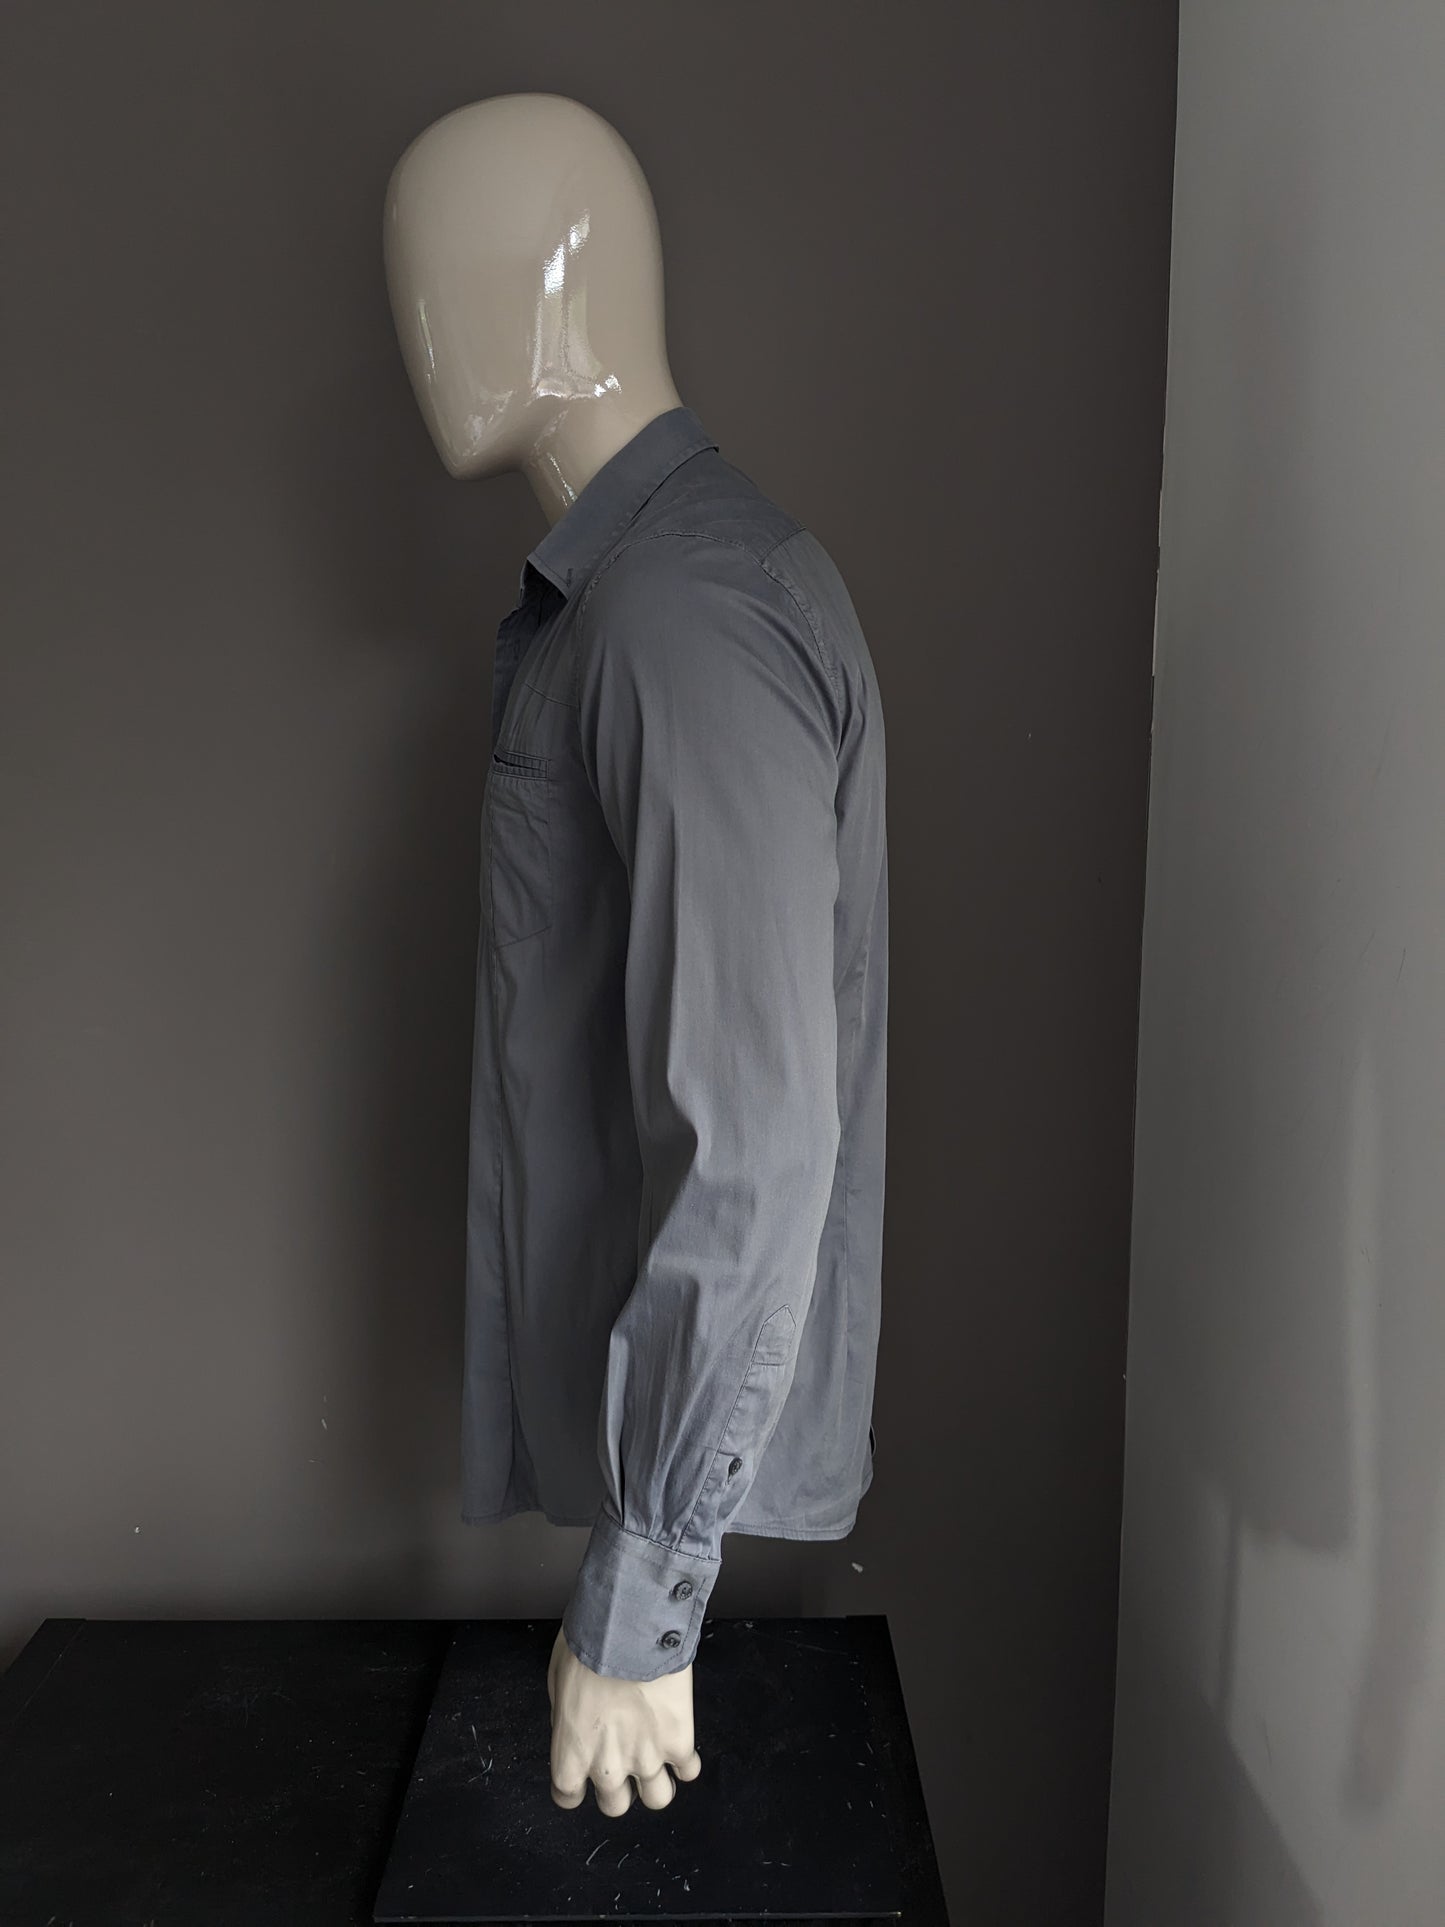 Camisa de Antony Morato. Color gris. Tamaño 52 / L. estiramiento.